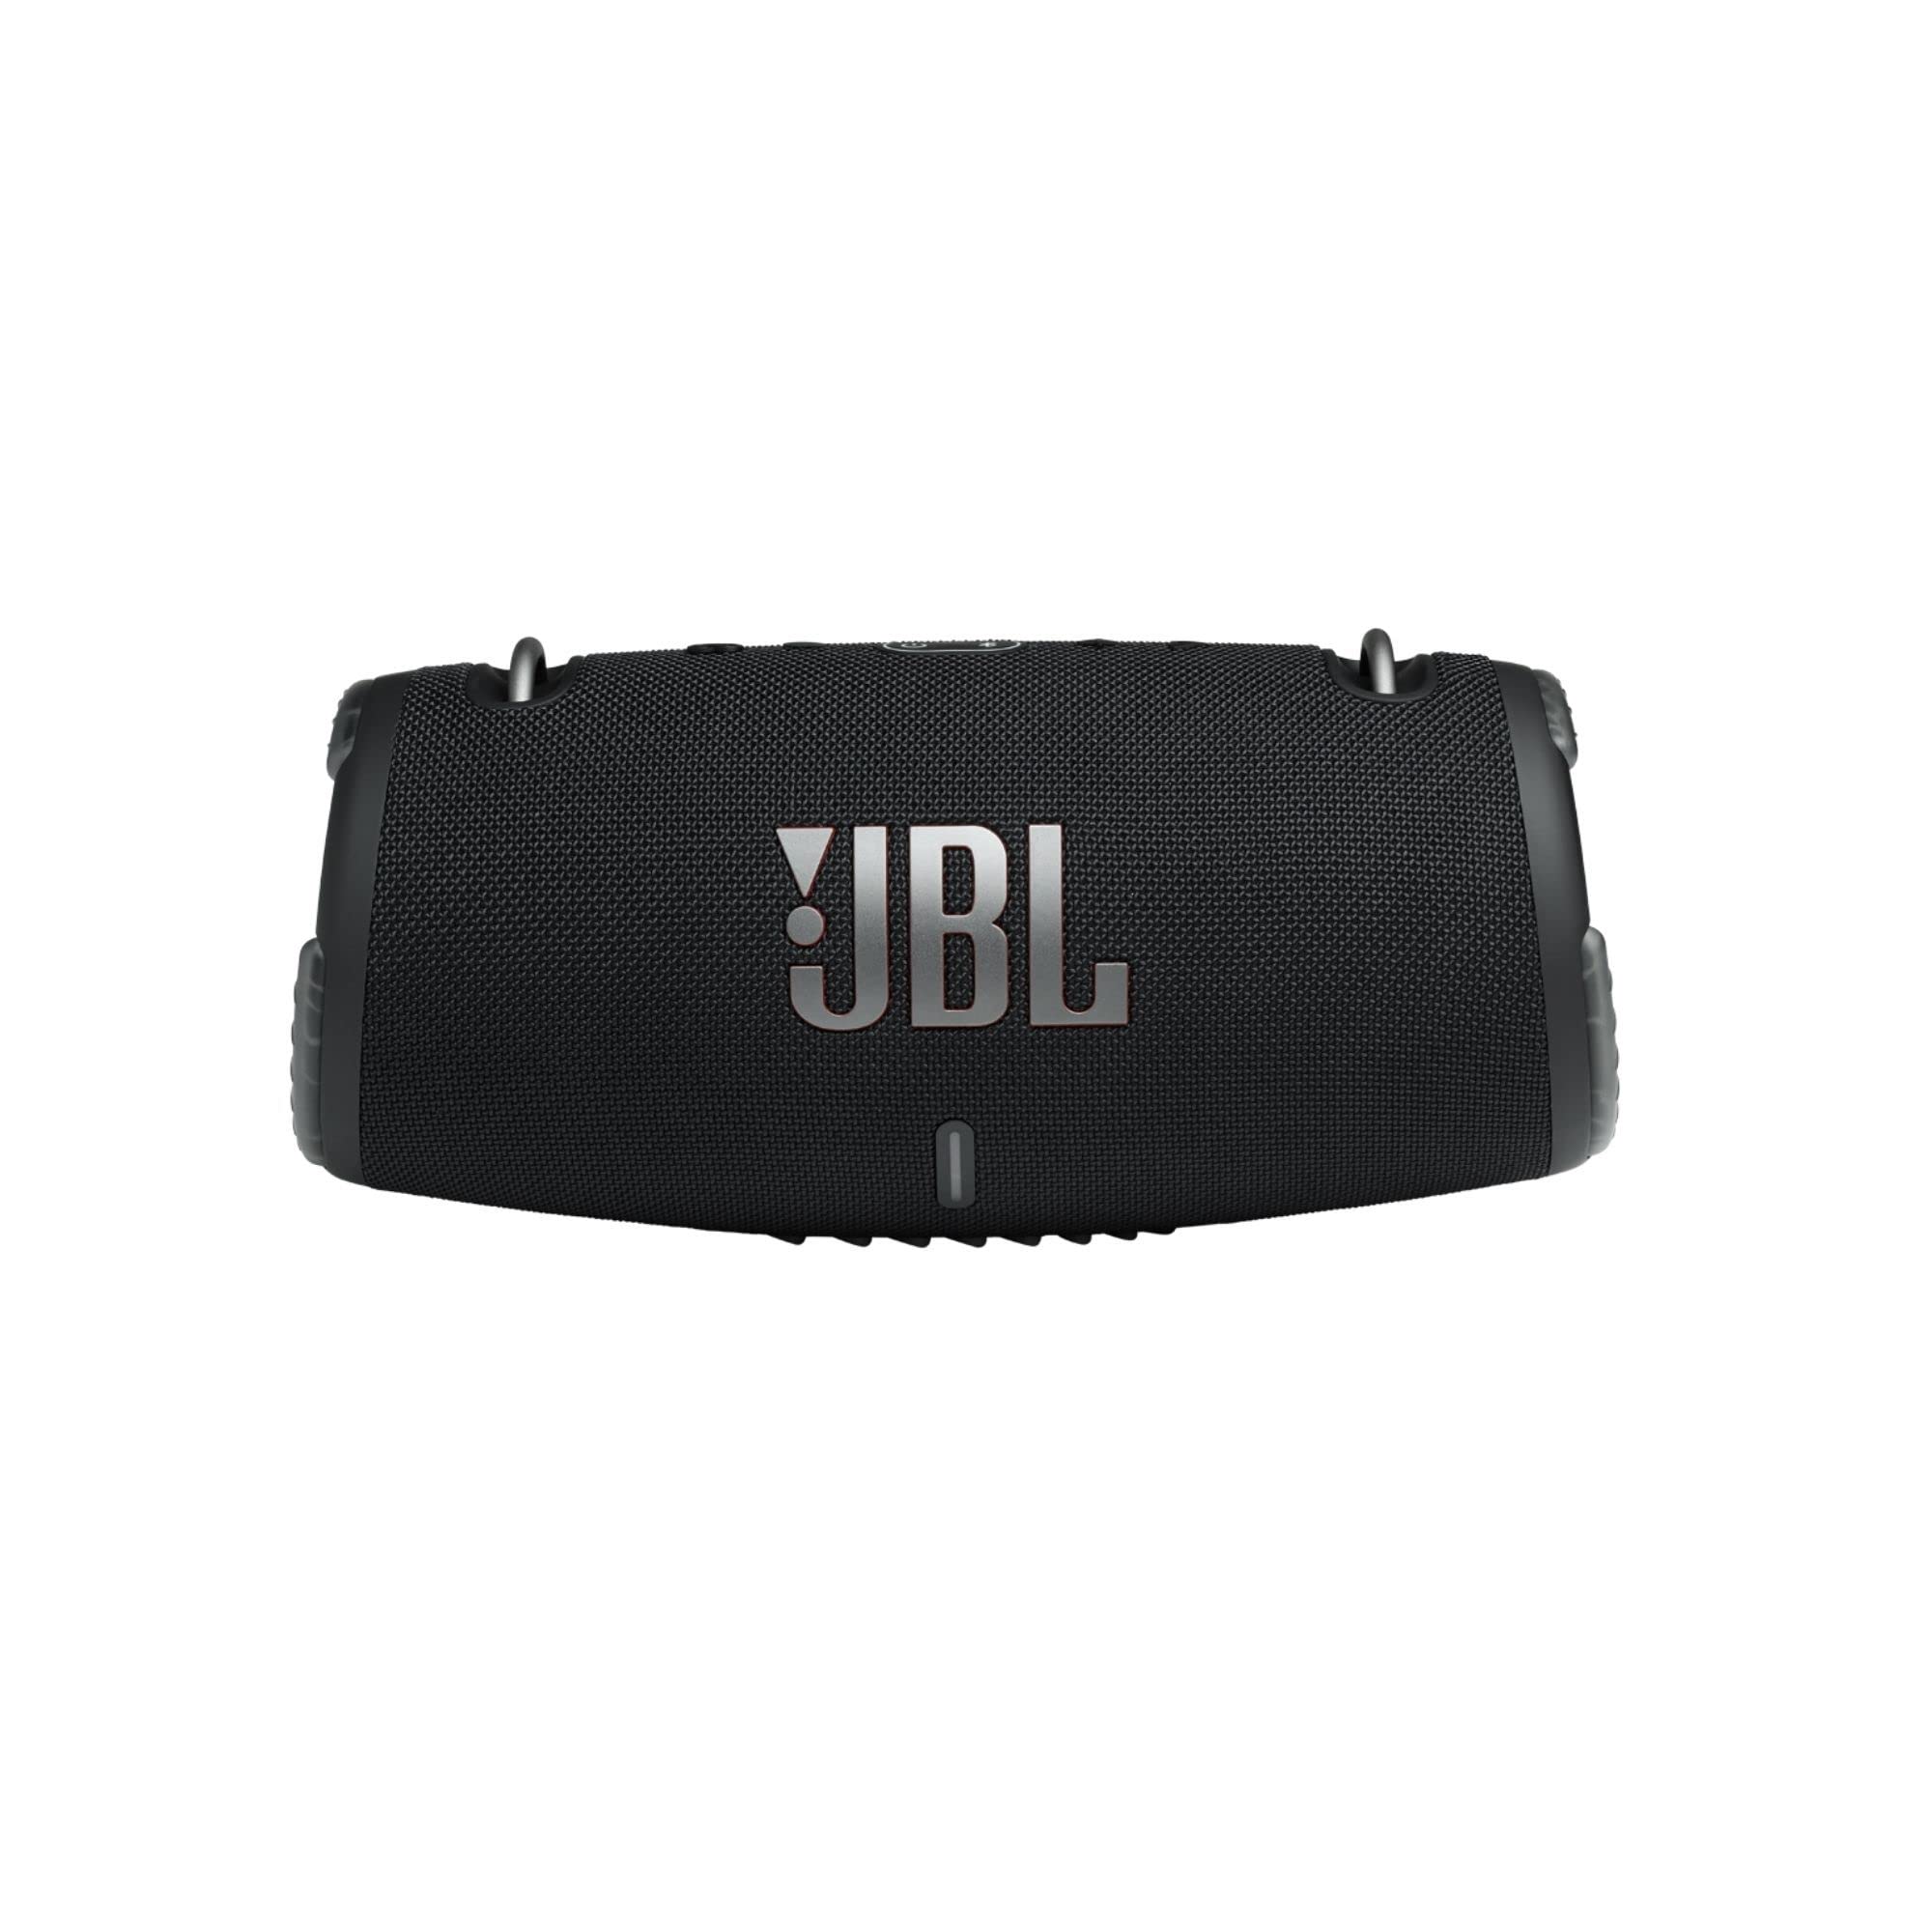 JBL Xtreme 3 — przenośny głośnik Bluetooth z wodoodpornością IP67